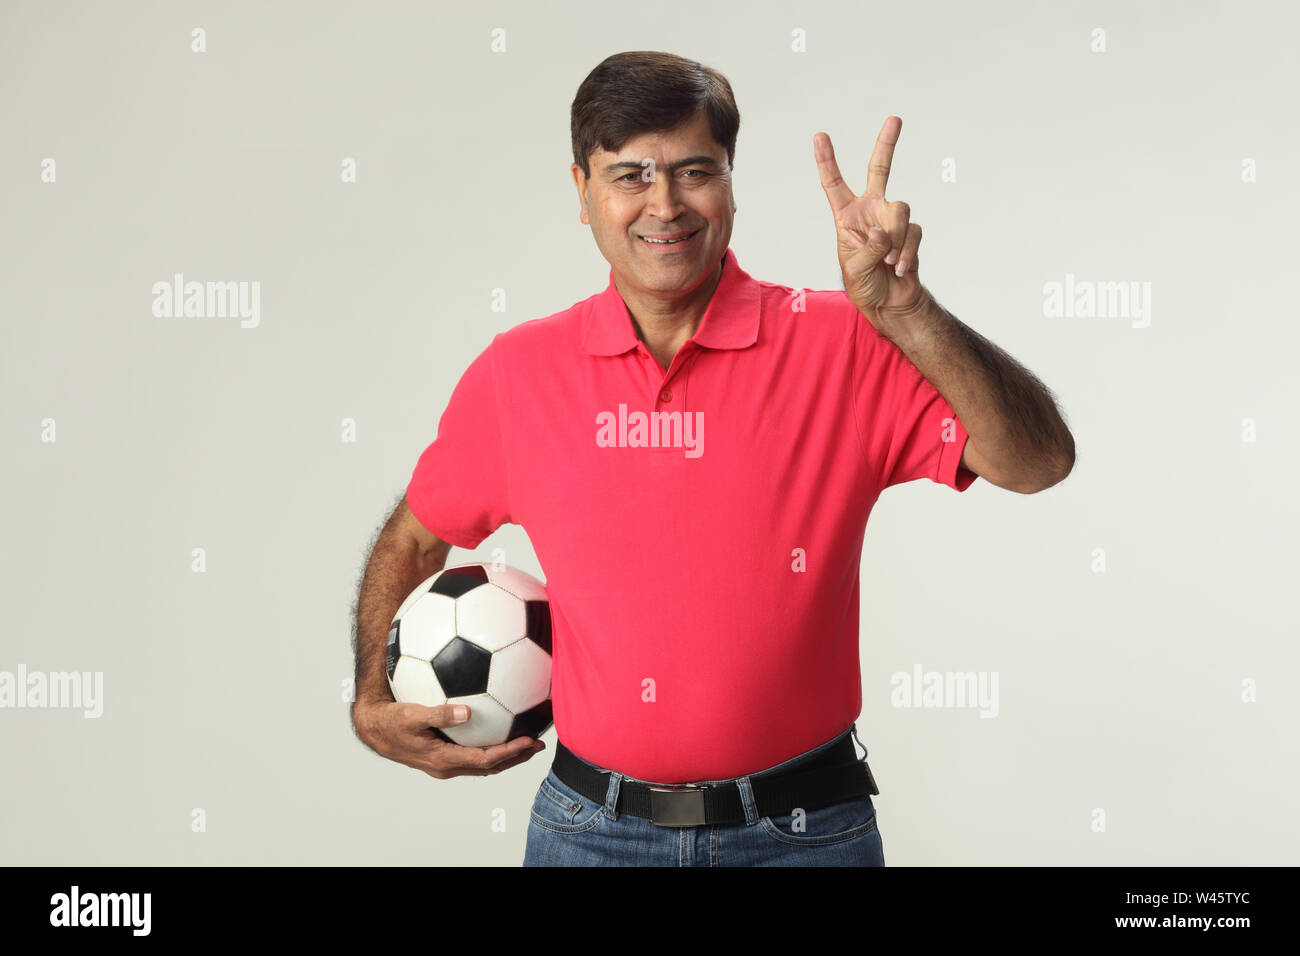 Porträt eines Mannes, der einen Fußball hält und zeigt Friedenszeichen Stockfoto